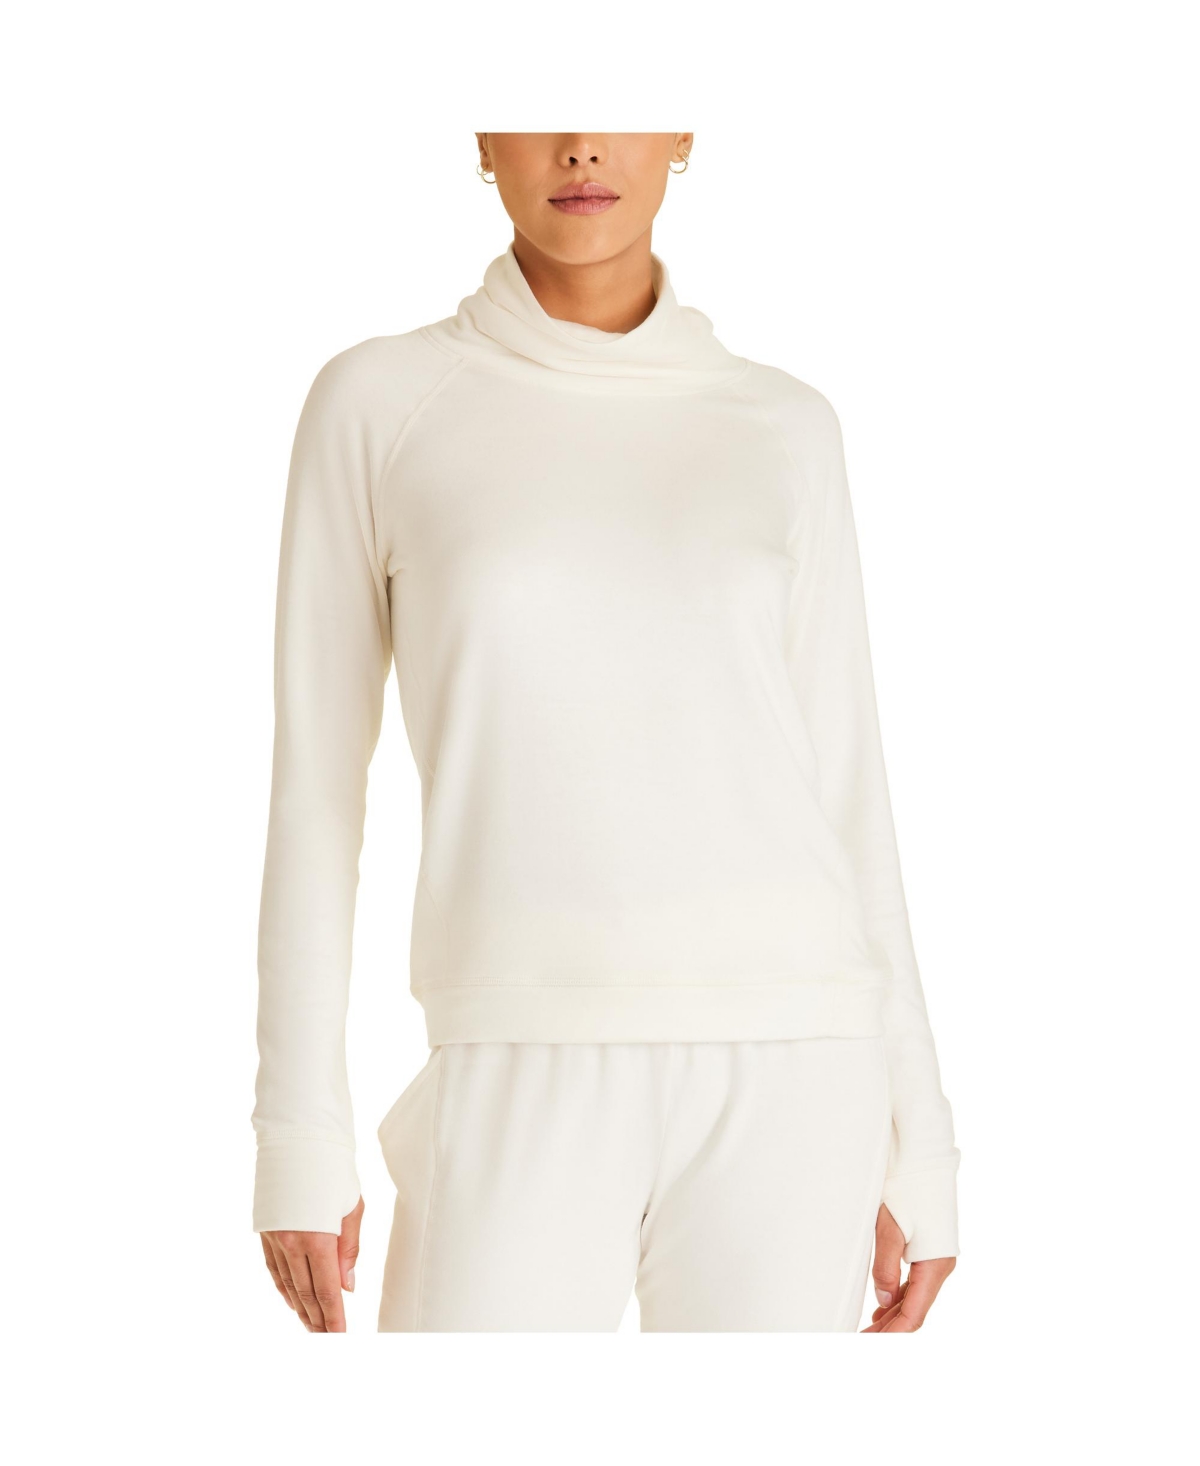 Adult Women Fleece Pullover Sweatshirt - Bone